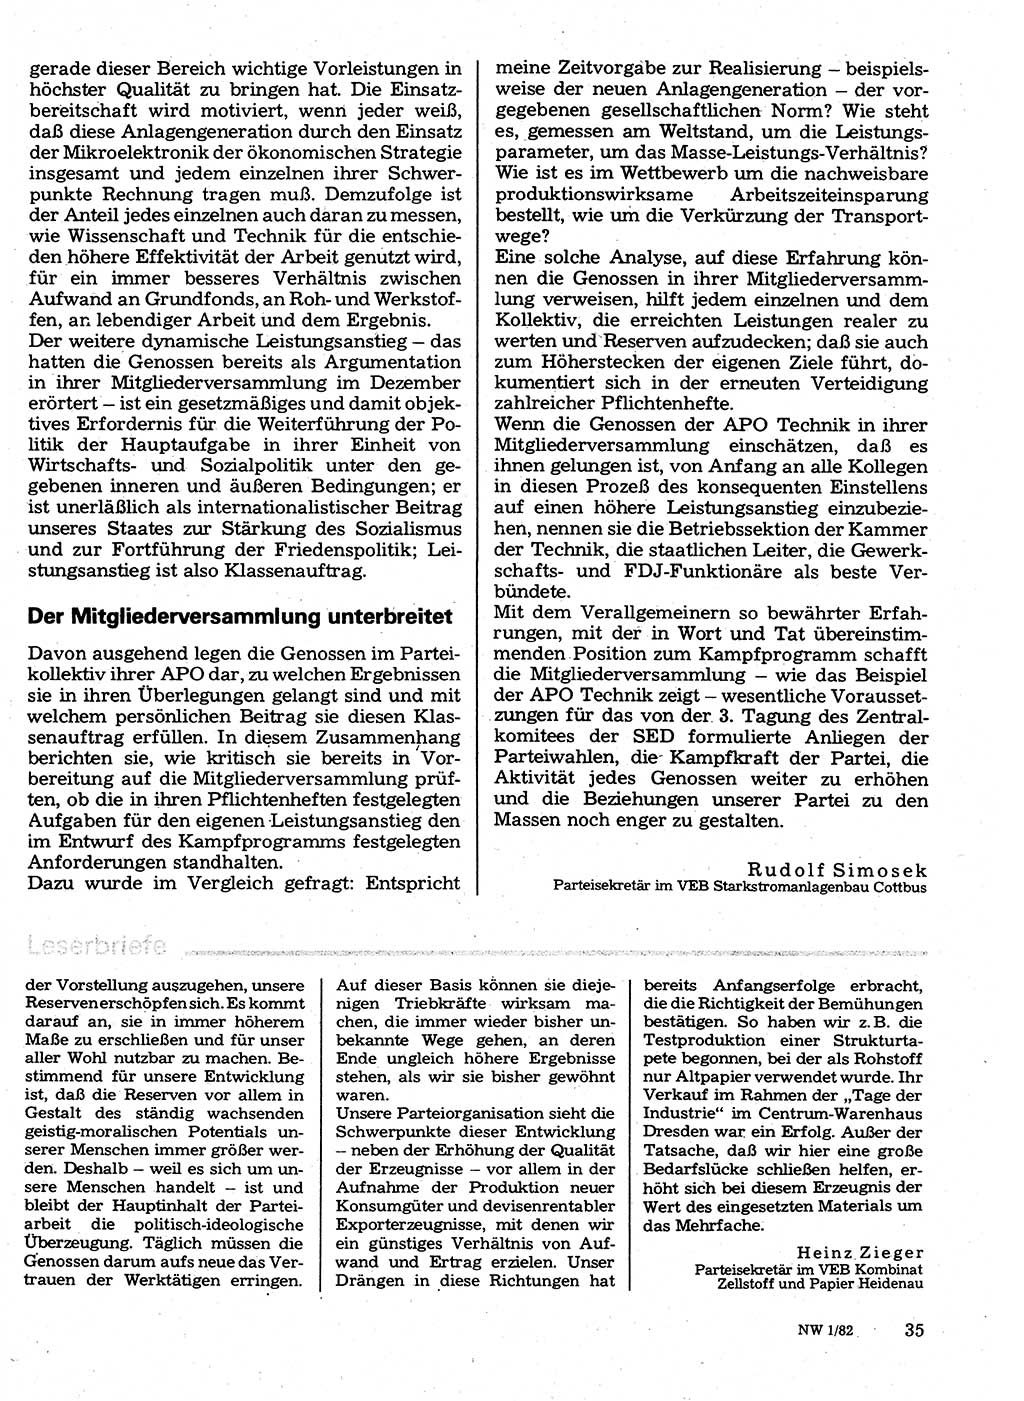 Neuer Weg (NW), Organ des Zentralkomitees (ZK) der SED (Sozialistische Einheitspartei Deutschlands) für Fragen des Parteilebens, 37. Jahrgang [Deutsche Demokratische Republik (DDR)] 1982, Seite 35 (NW ZK SED DDR 1982, S. 35)